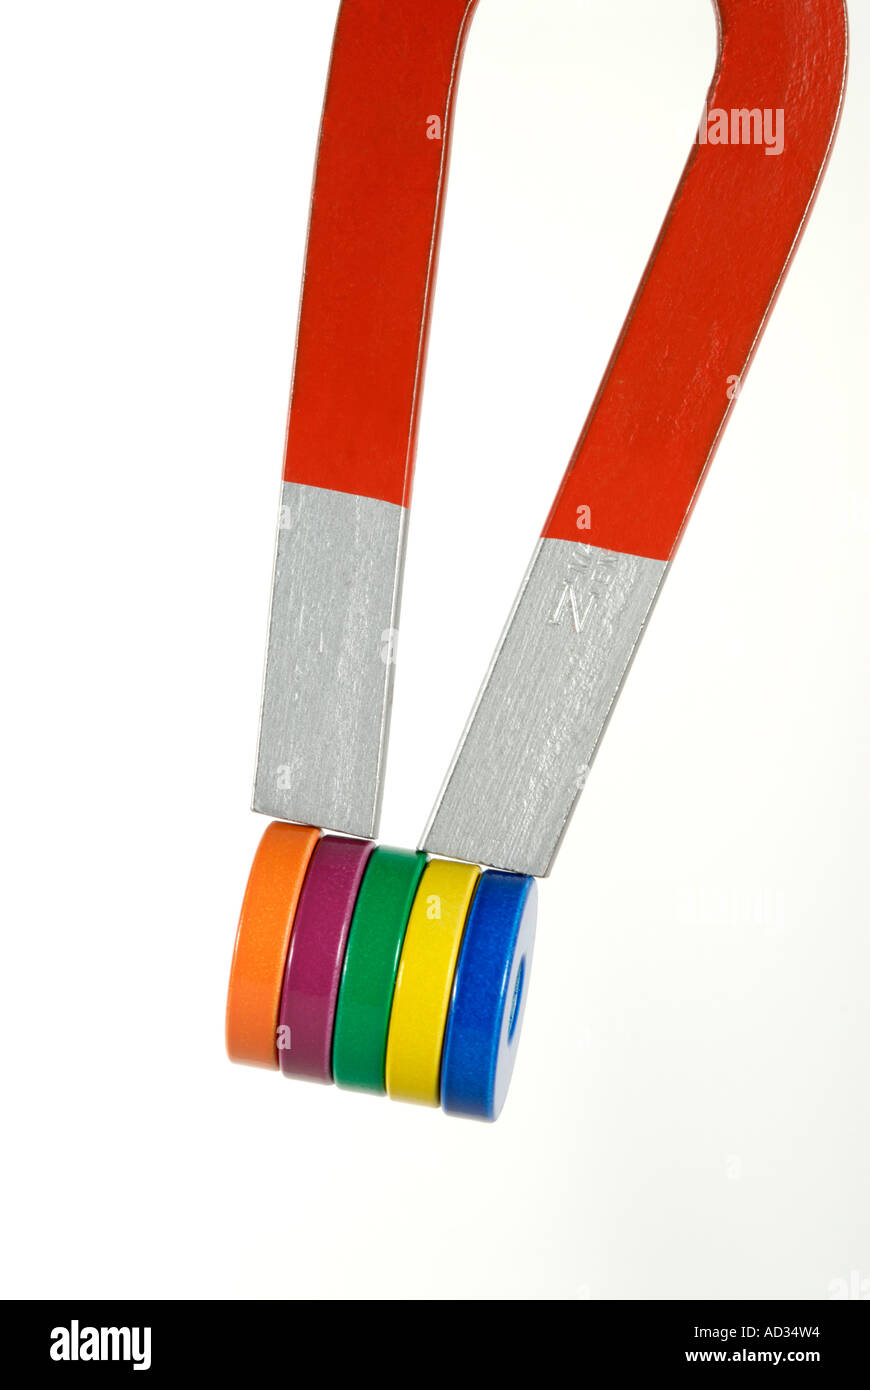 Dos polos del imán con forma de herradura, con coloridos Los imanes conectados Foto de stock